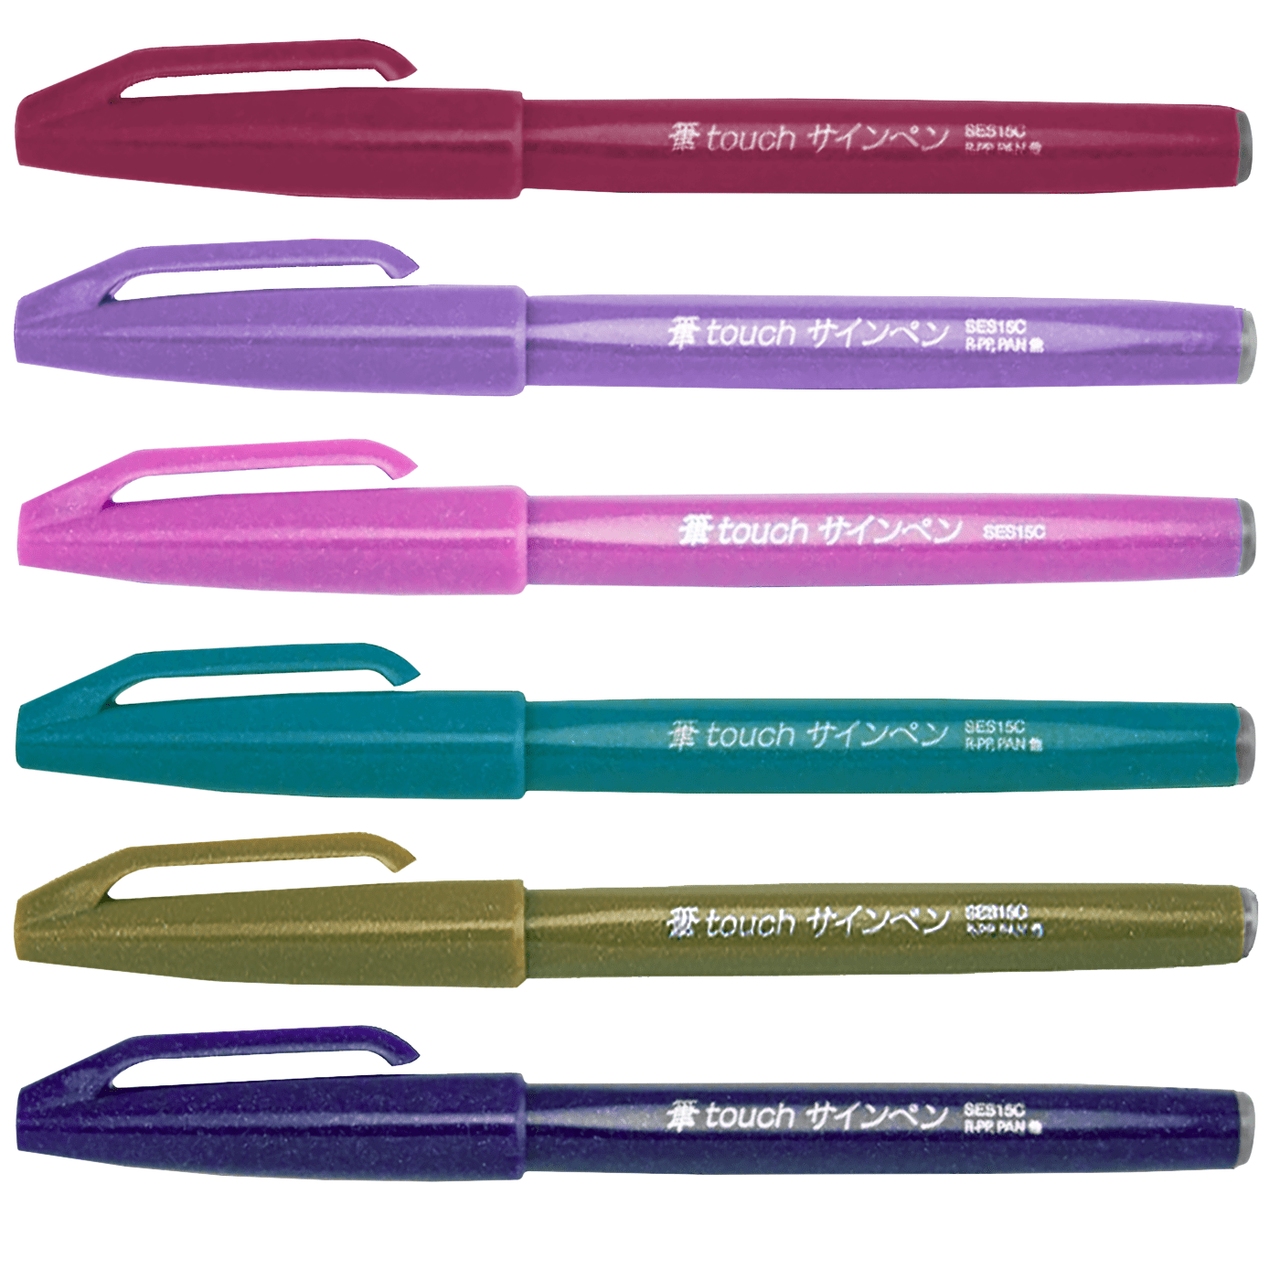 Pentel Fude Touch Sign Pen, Red, Felt Pen Like Brush Stroke (SES15C-B)